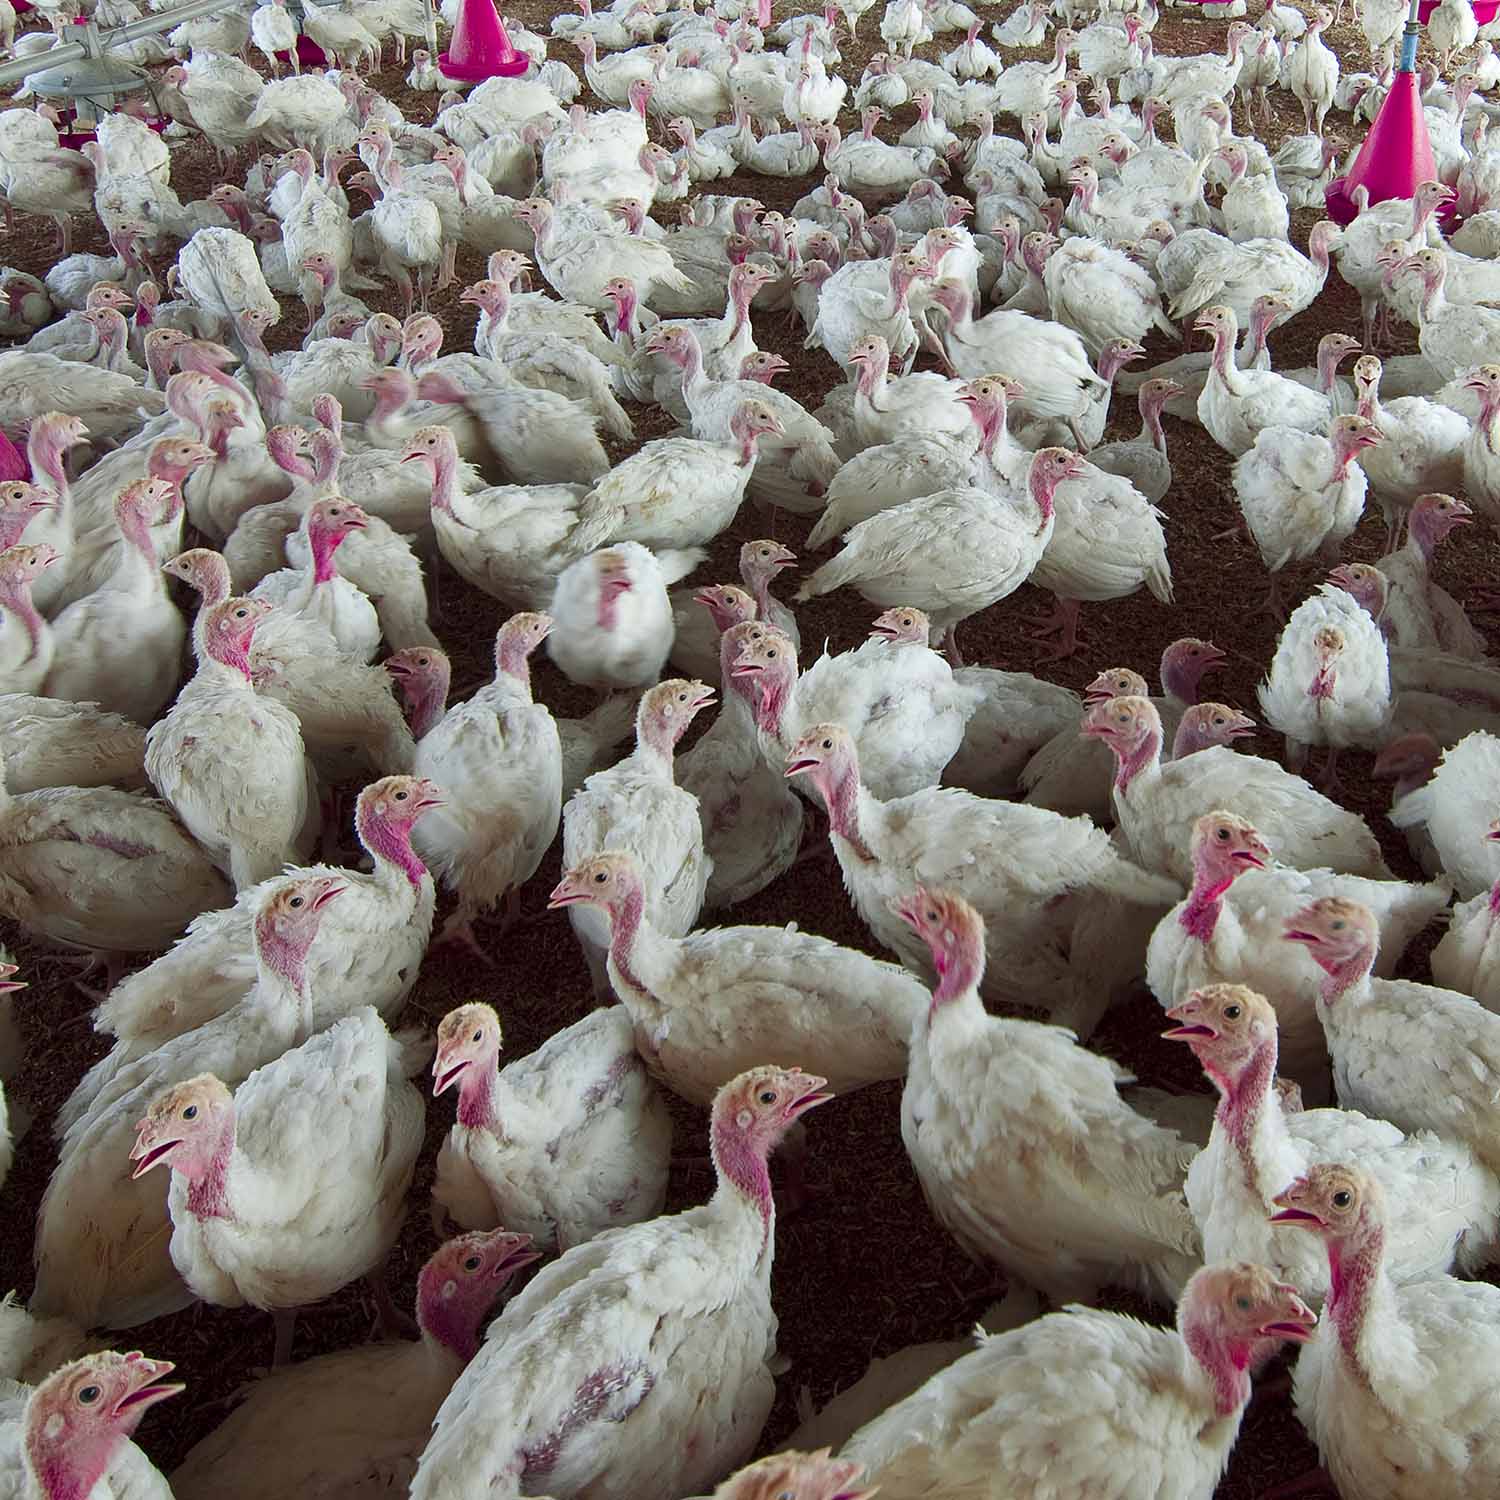 turkeys farm group birds 1500x1500 1 Animal Equality Files Complaint Against Major Turkey Producer